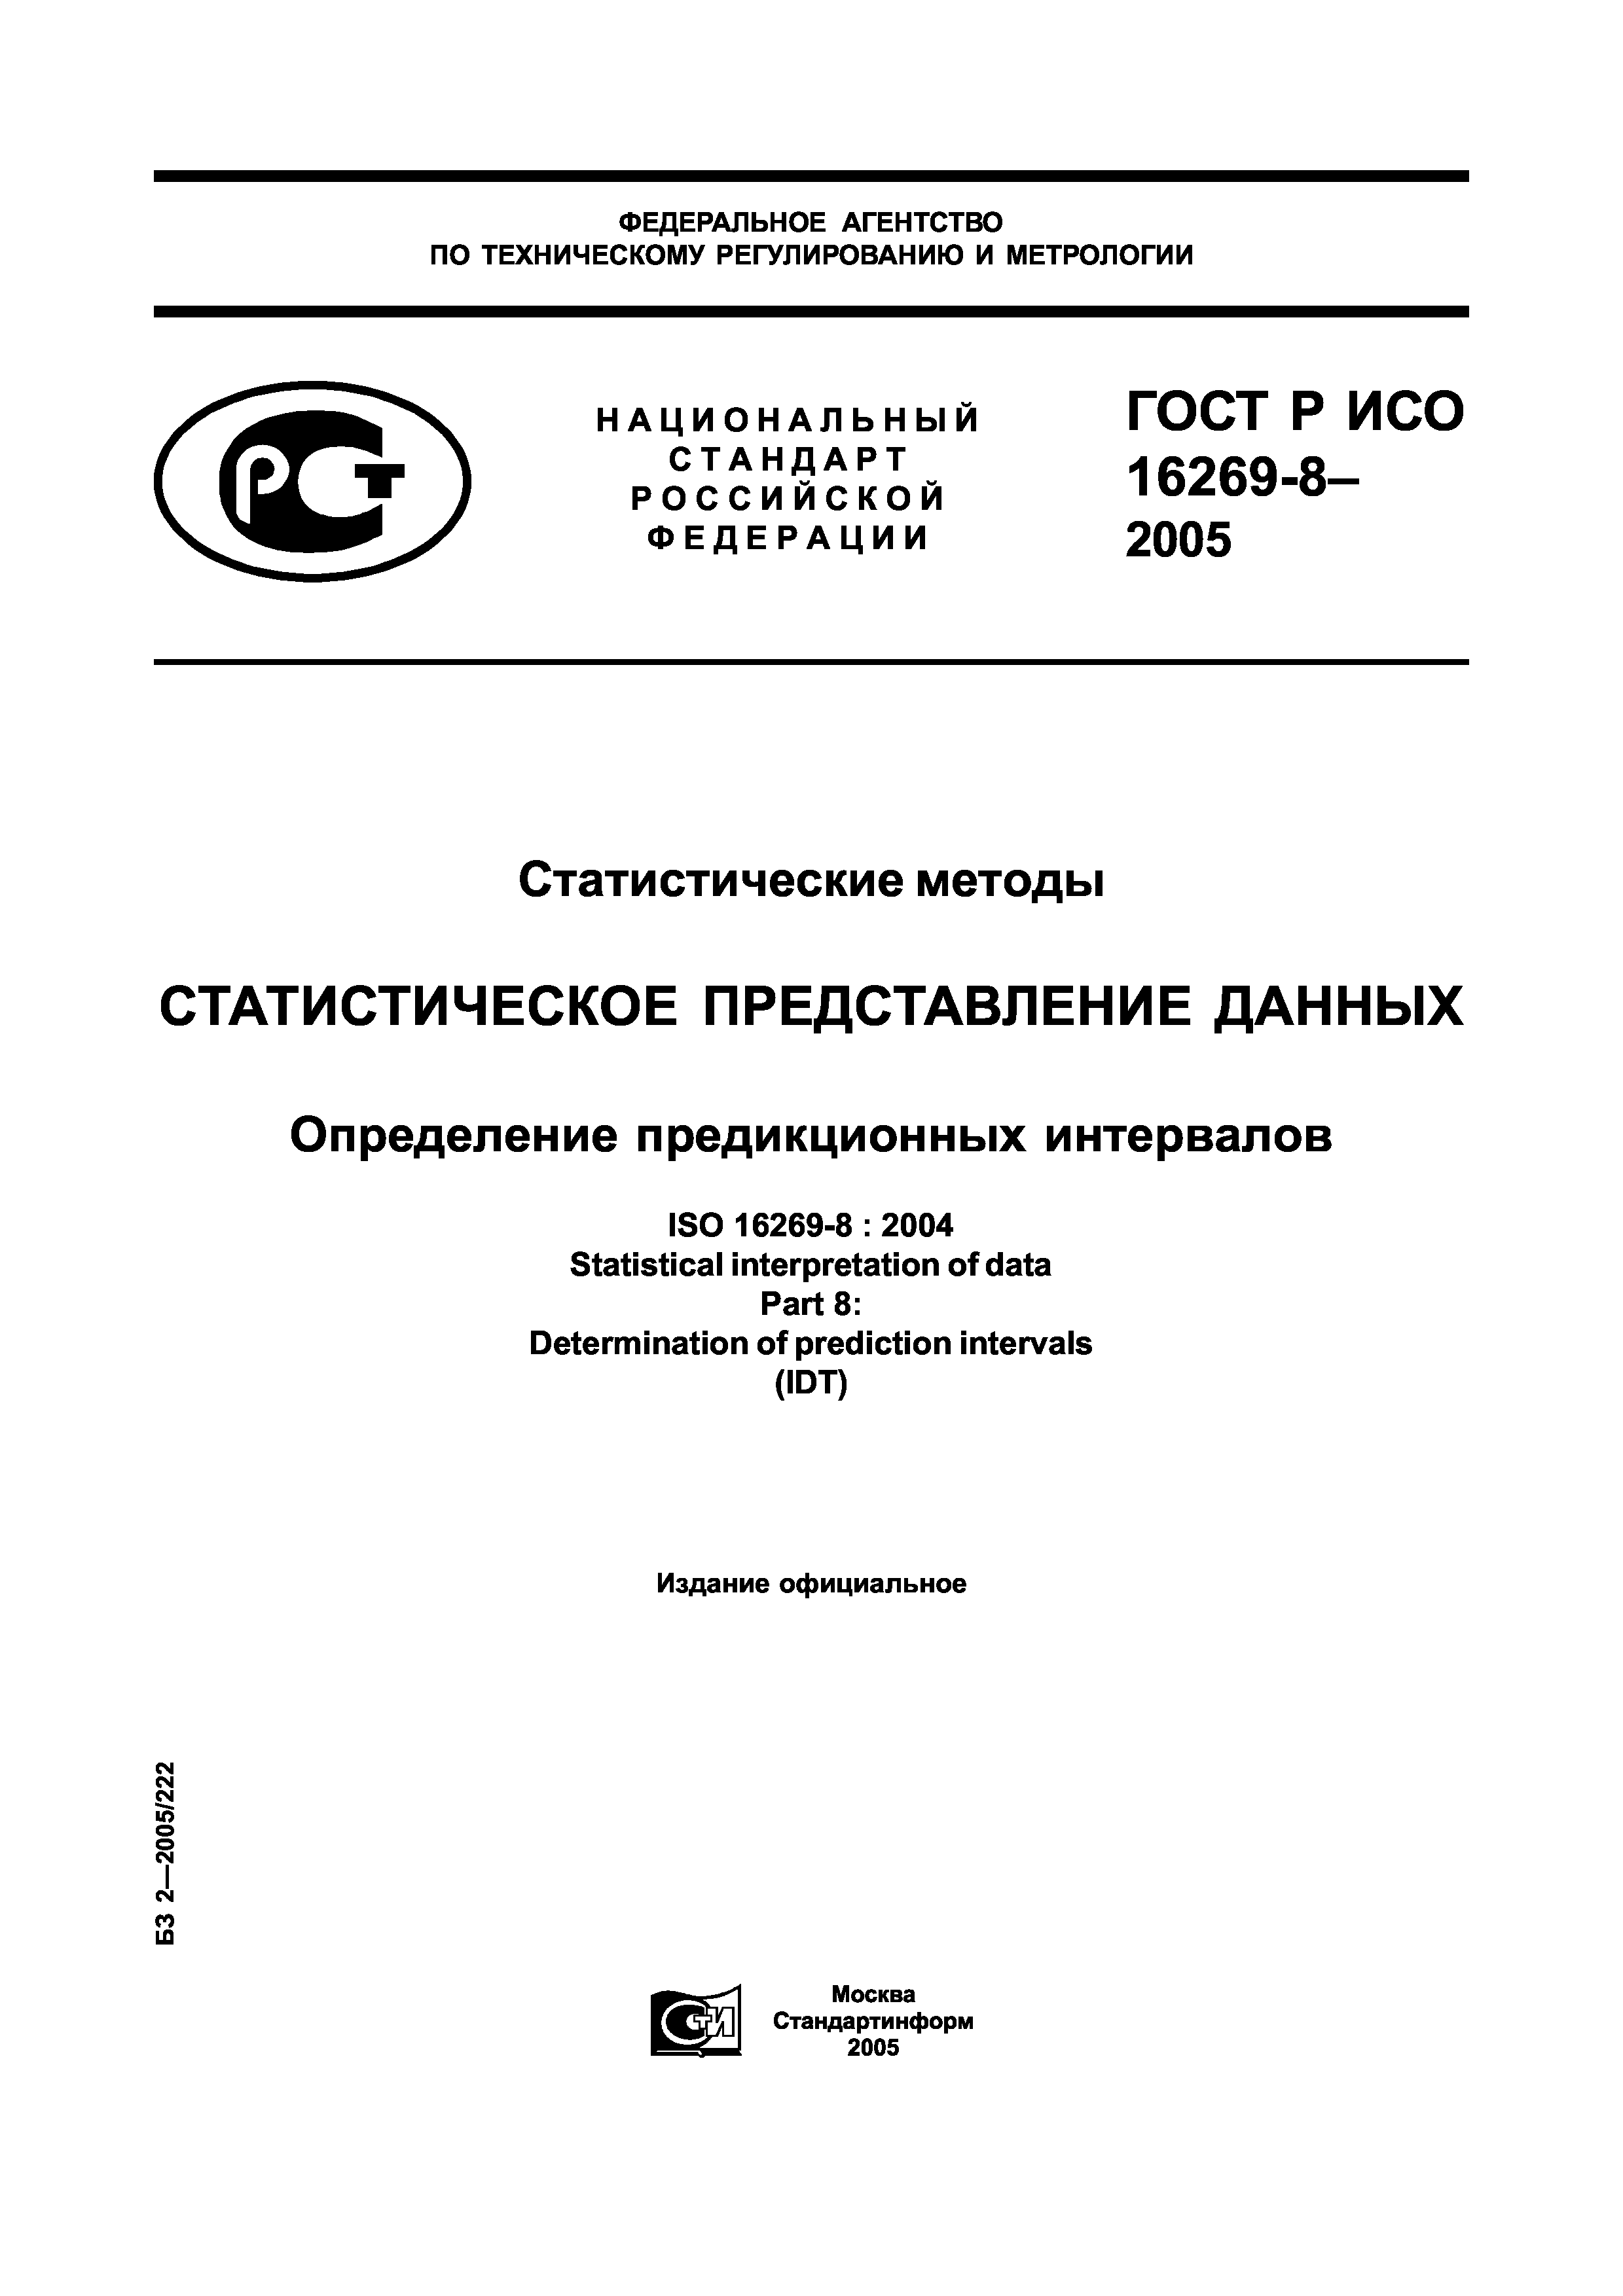 ГОСТ Р ИСО 16269-8-2005